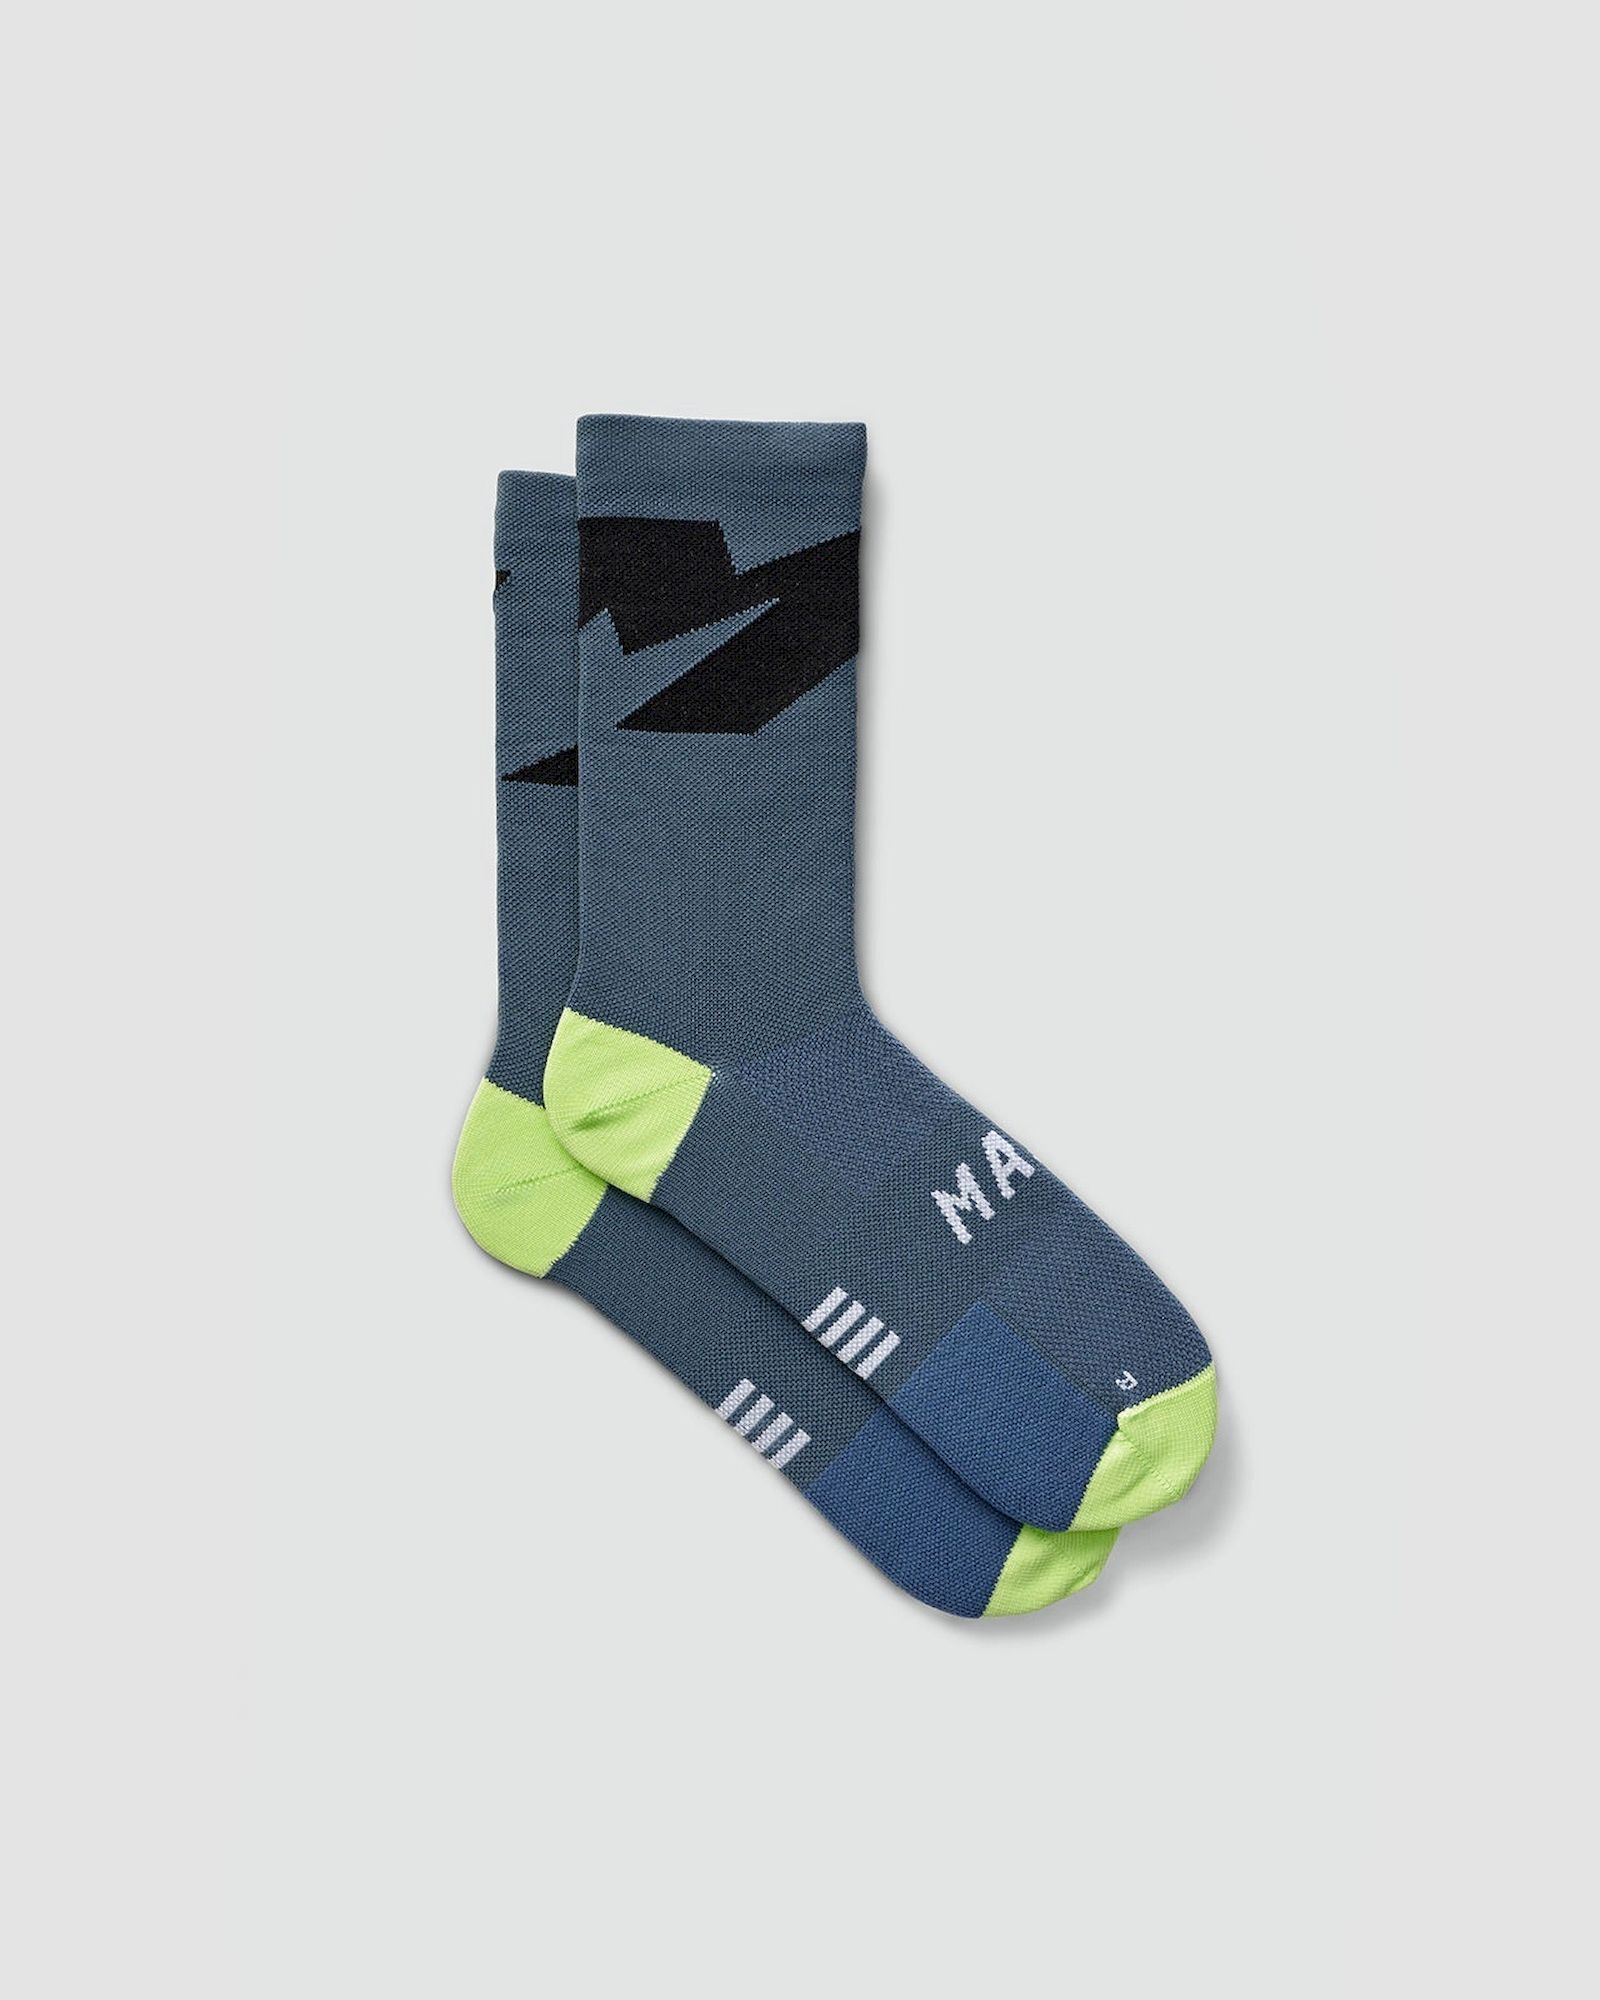 Maap Evolve Sock - Fietssokken | Hardloop